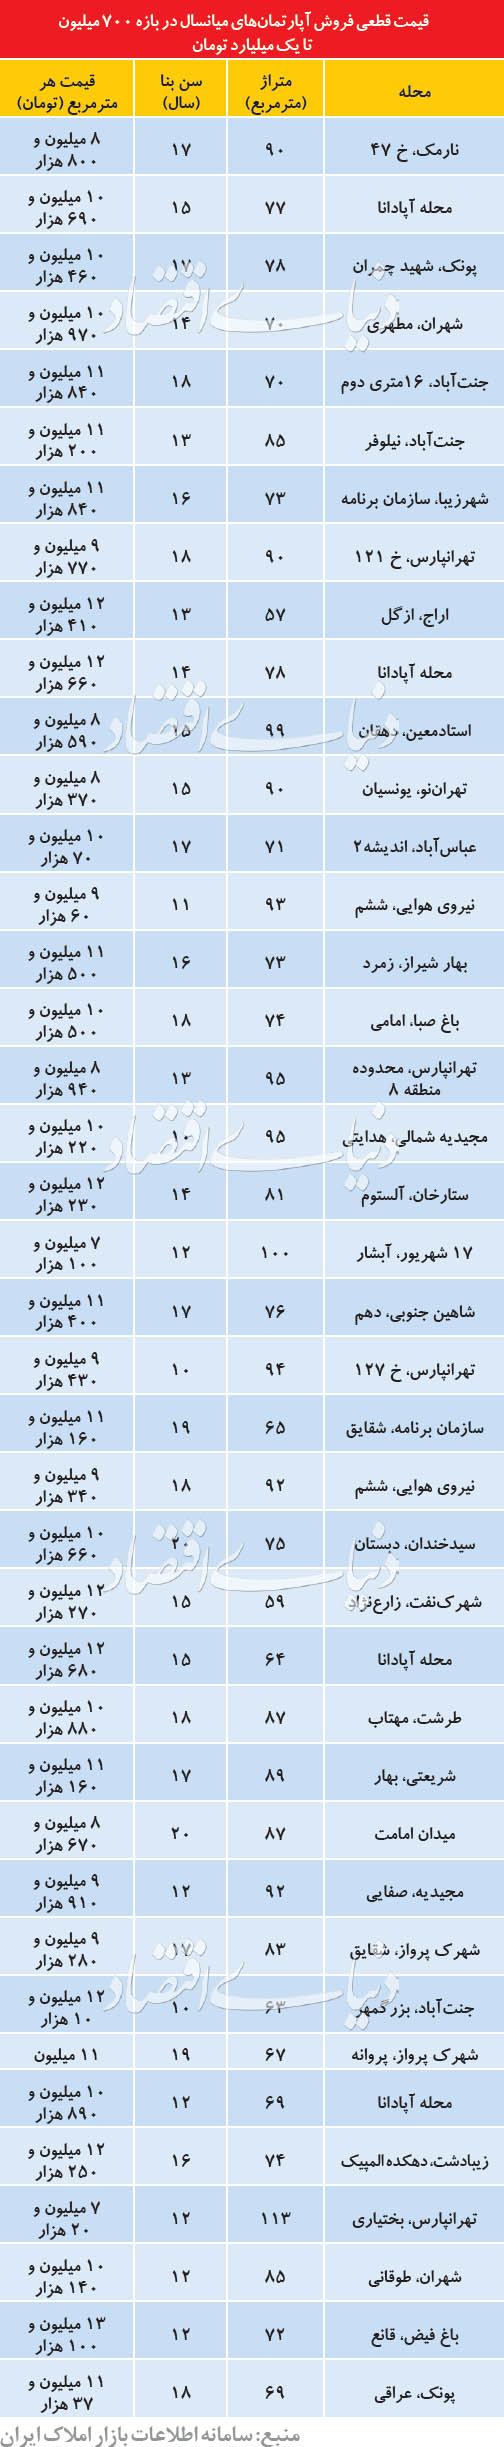 خرید و فروش آپارتمان در تهران